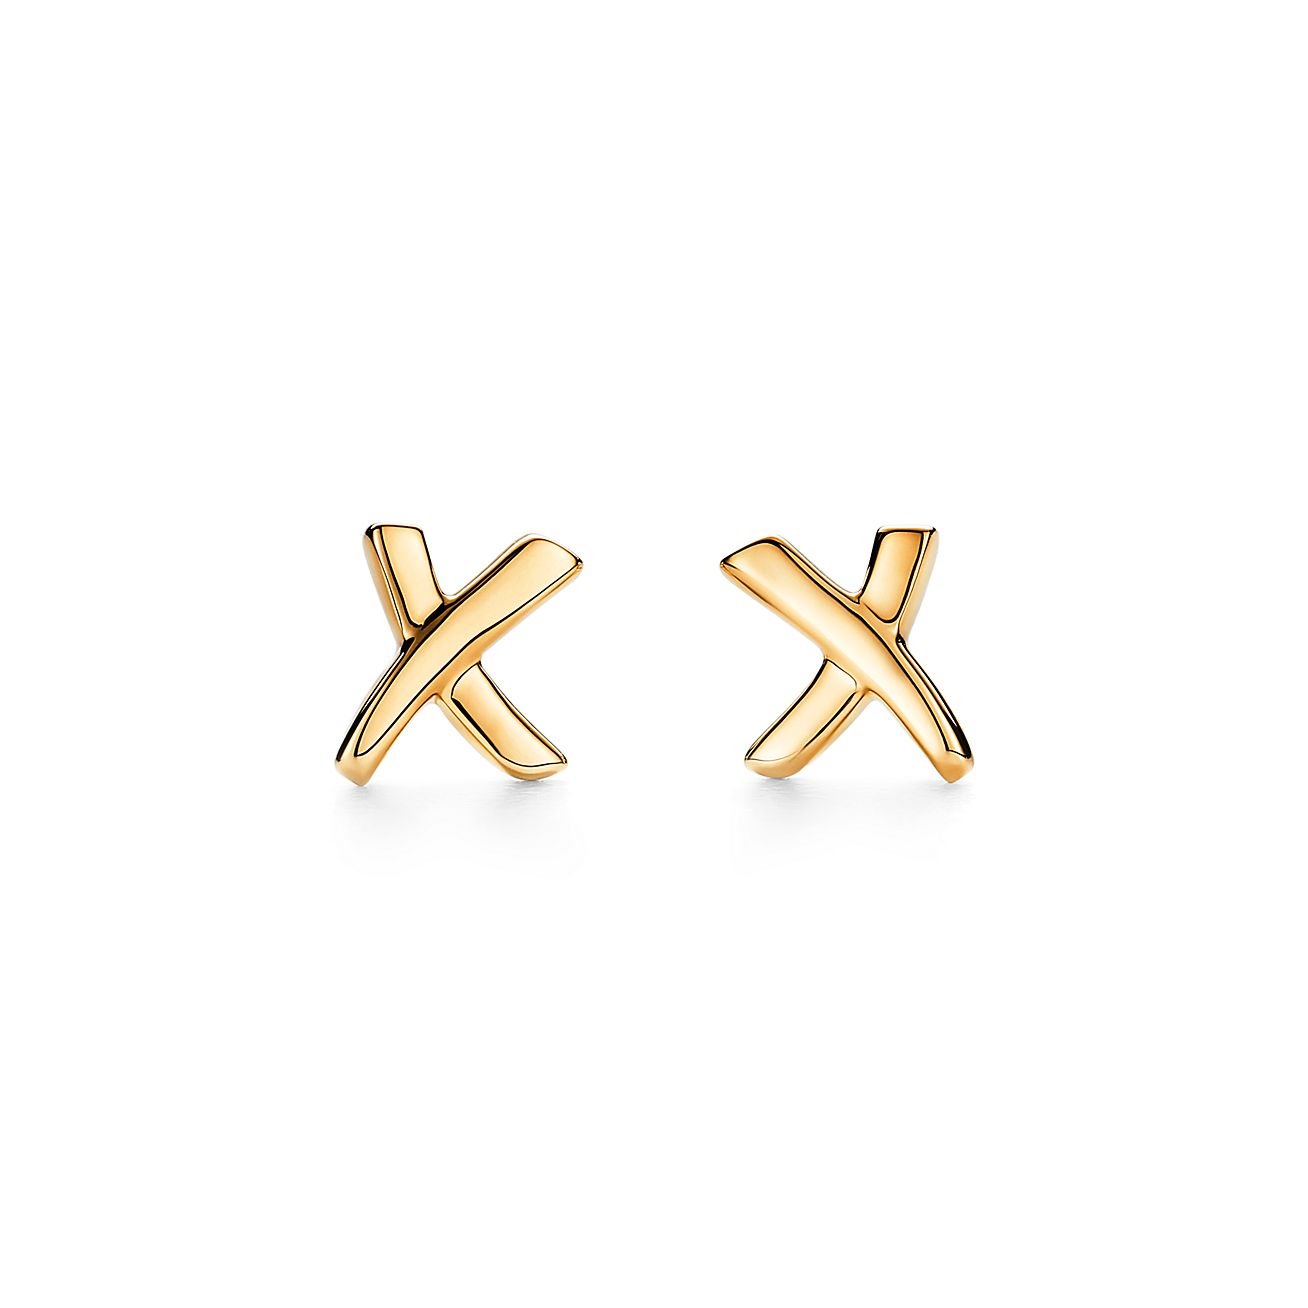 Gold Cross Earrings Bold Statement Earrings For Women Large Cross